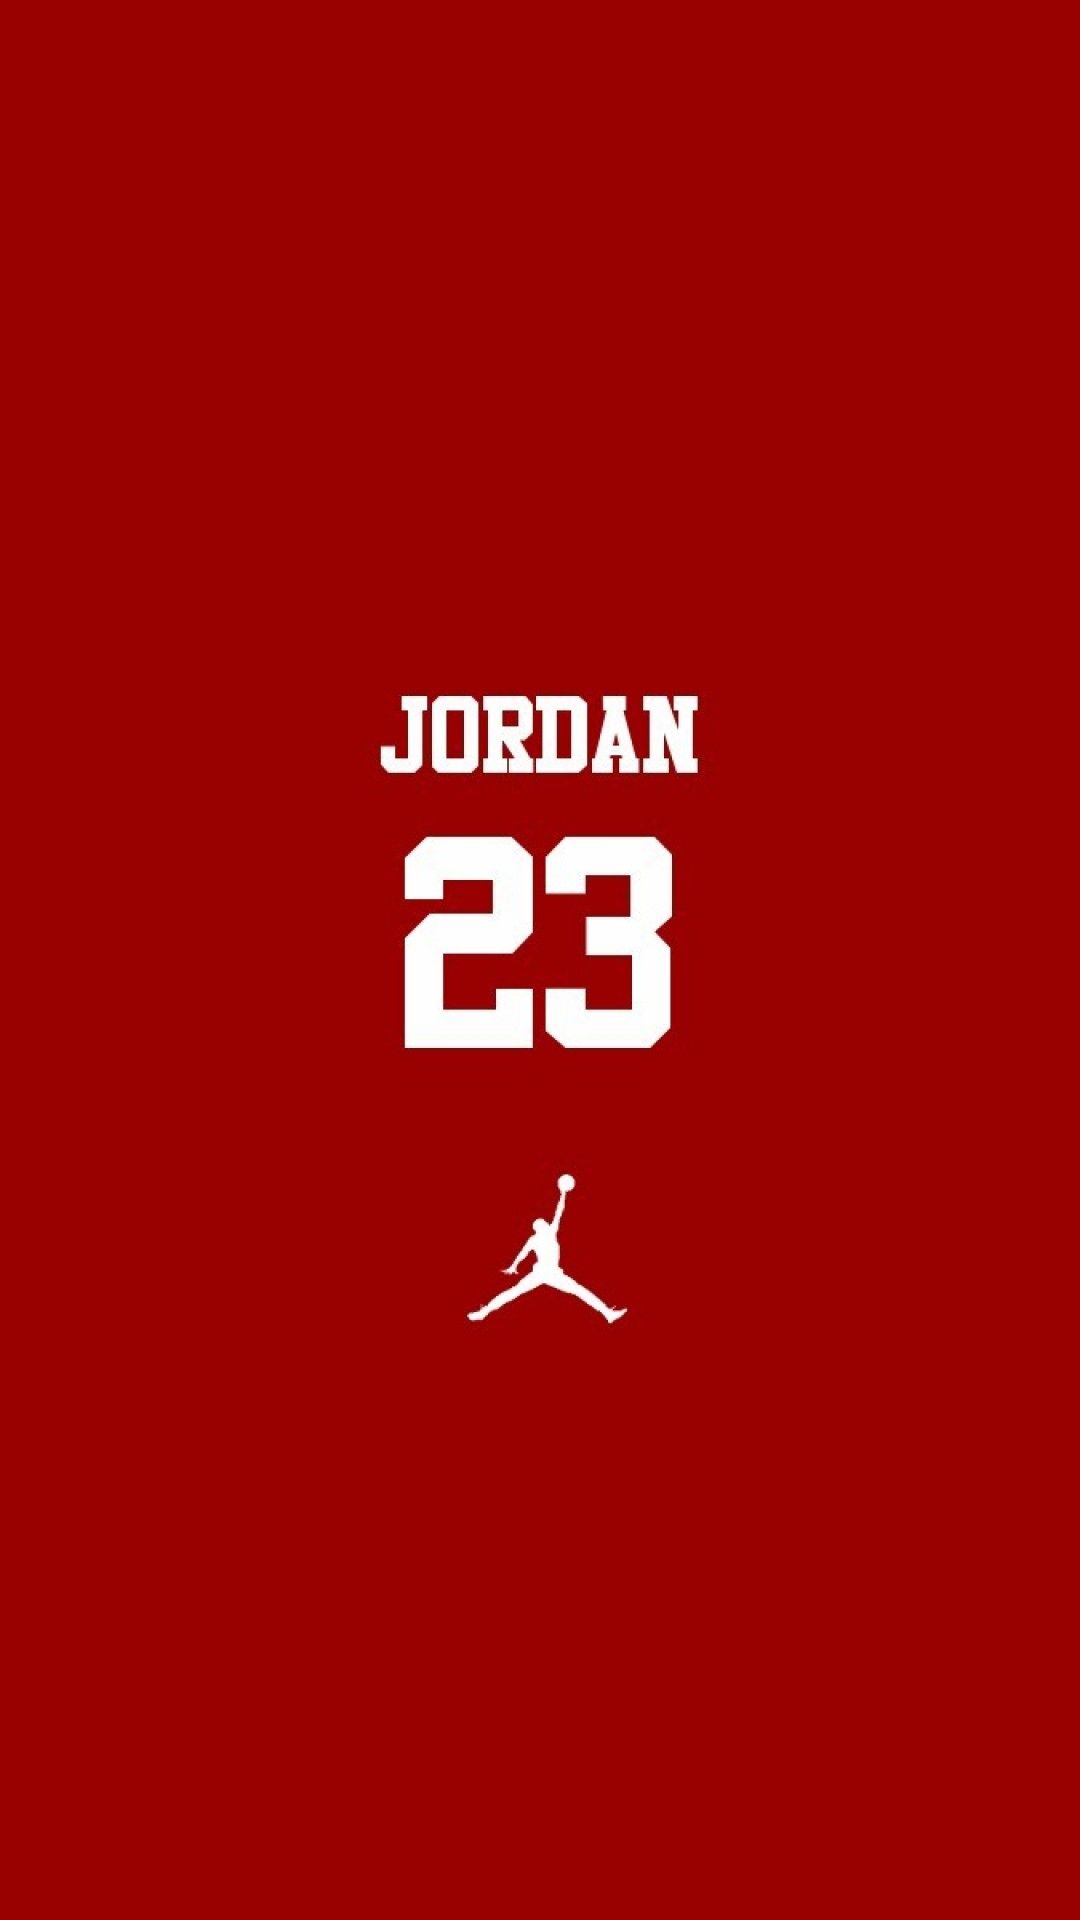 Michael Jordan Wallpapers 4k Download